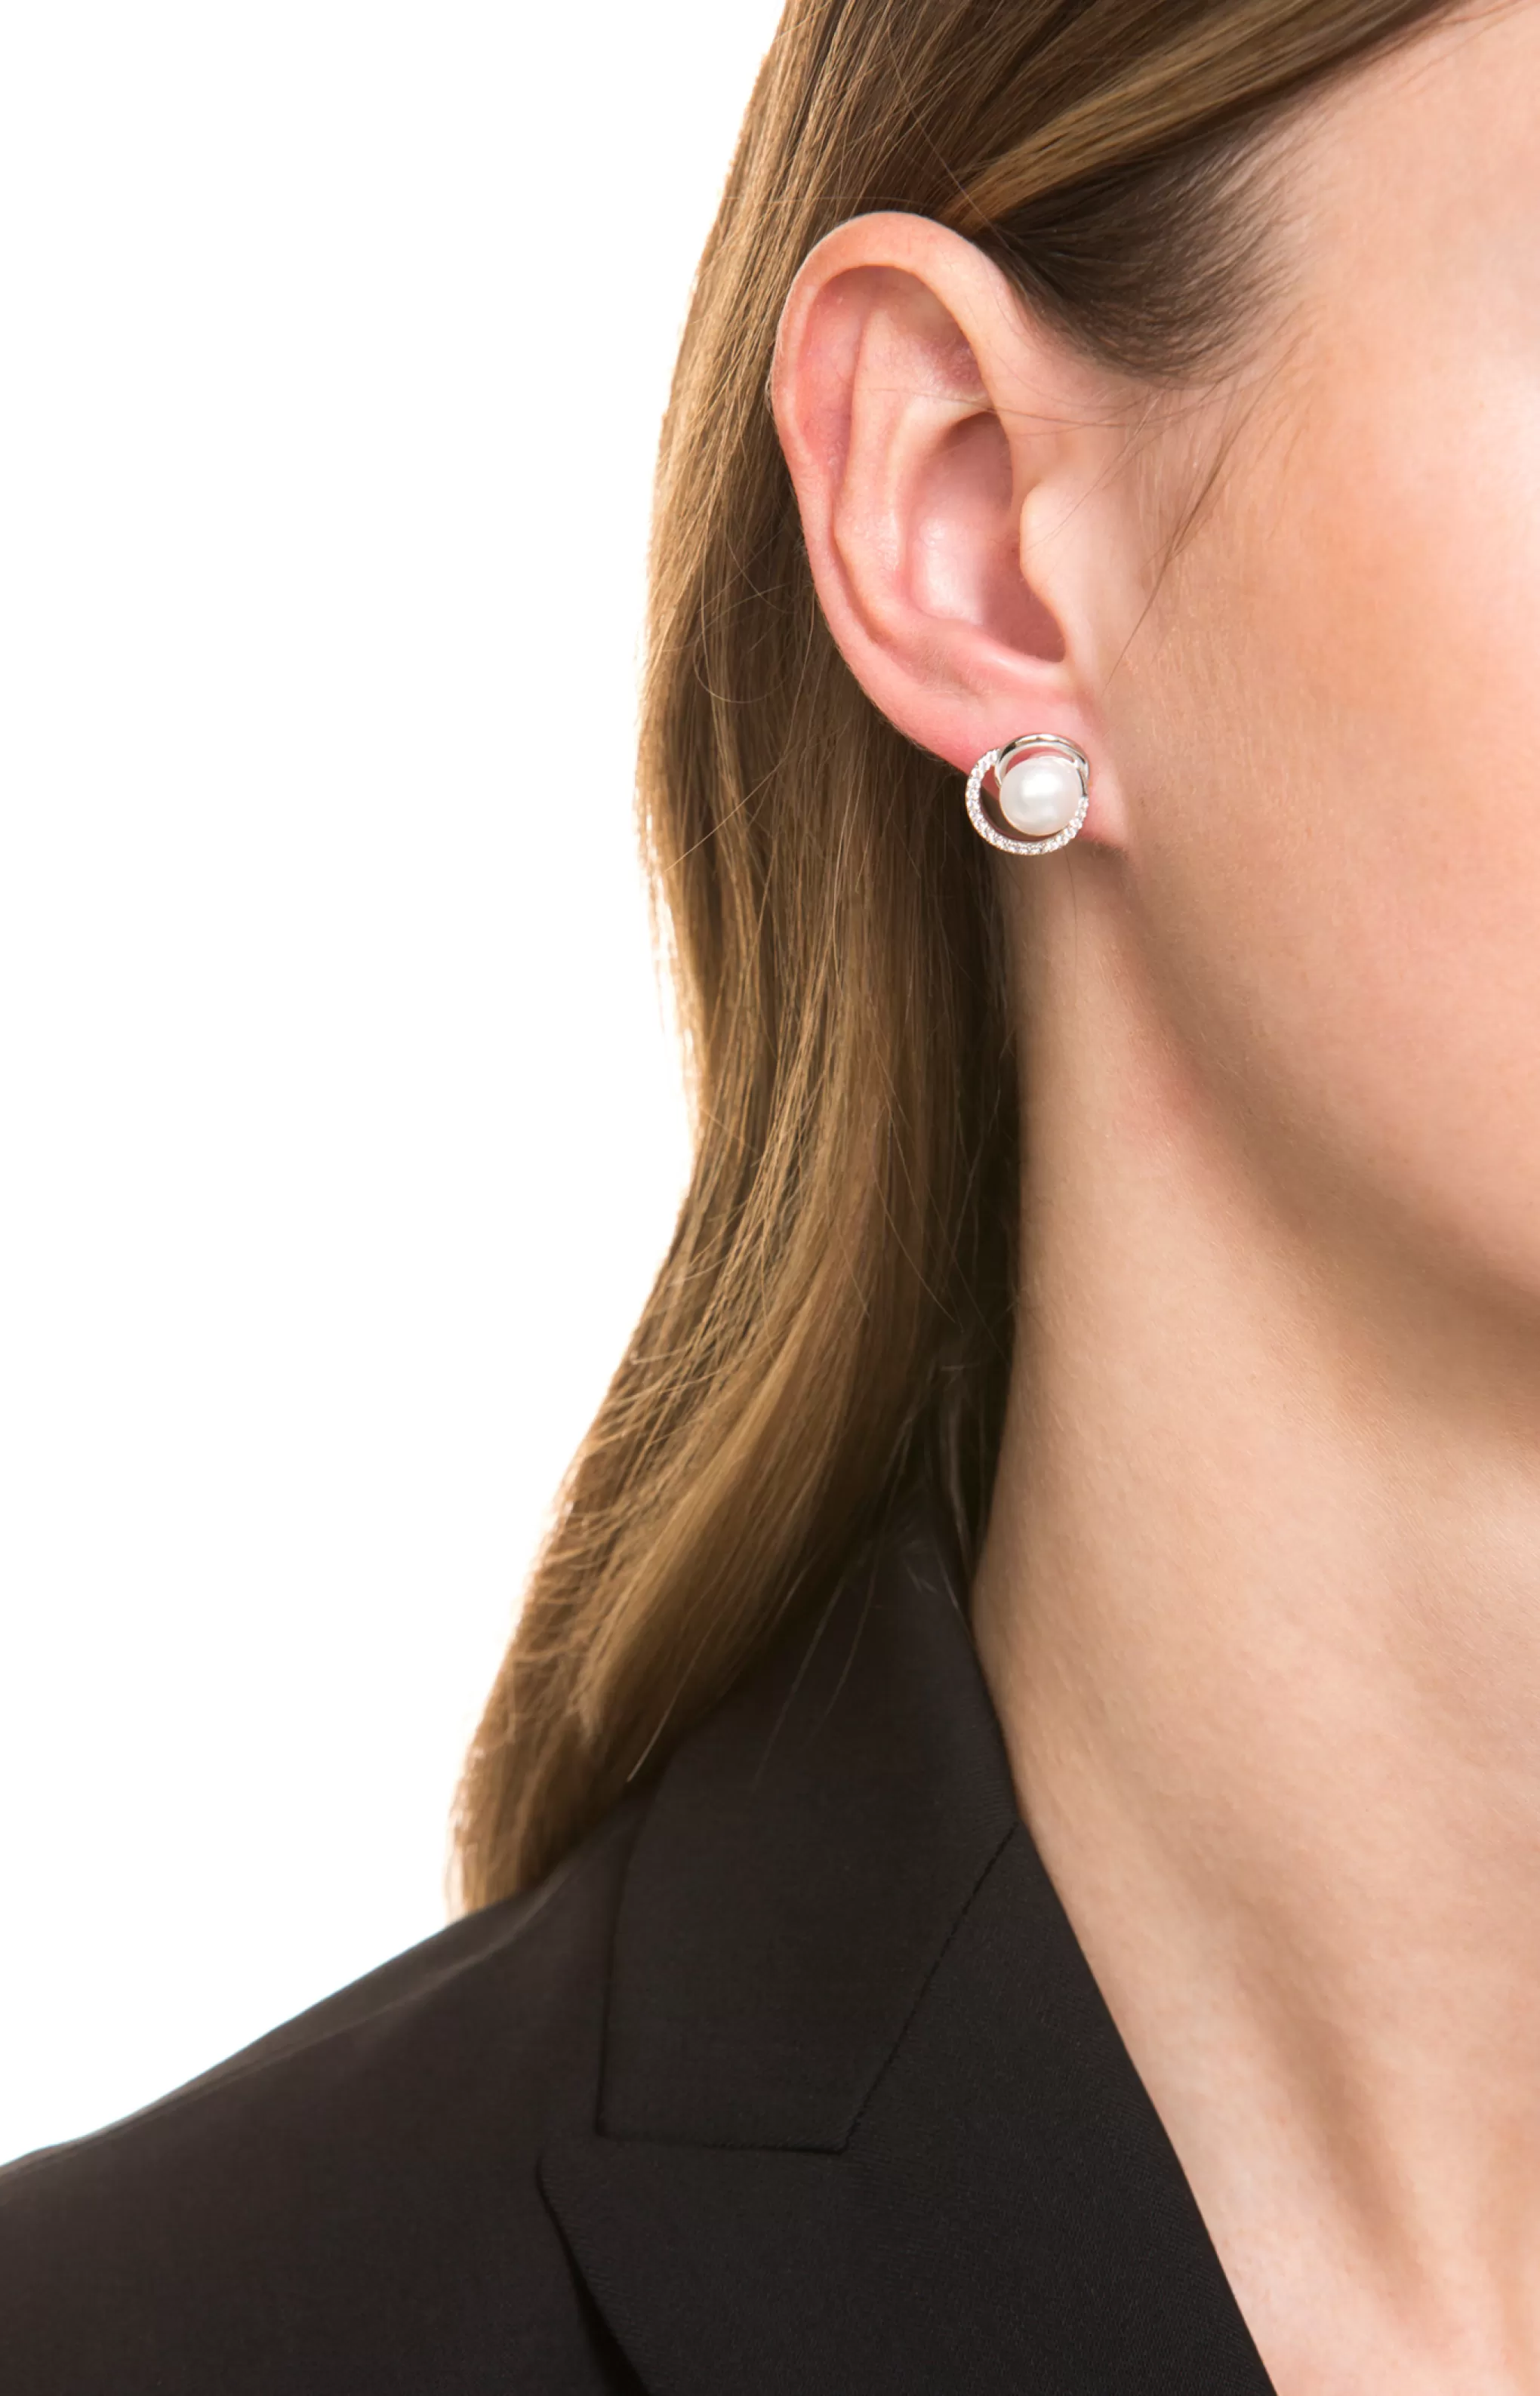 Earrings | Jewellery*JOOP Earrings | Jewellery Stud earrings in